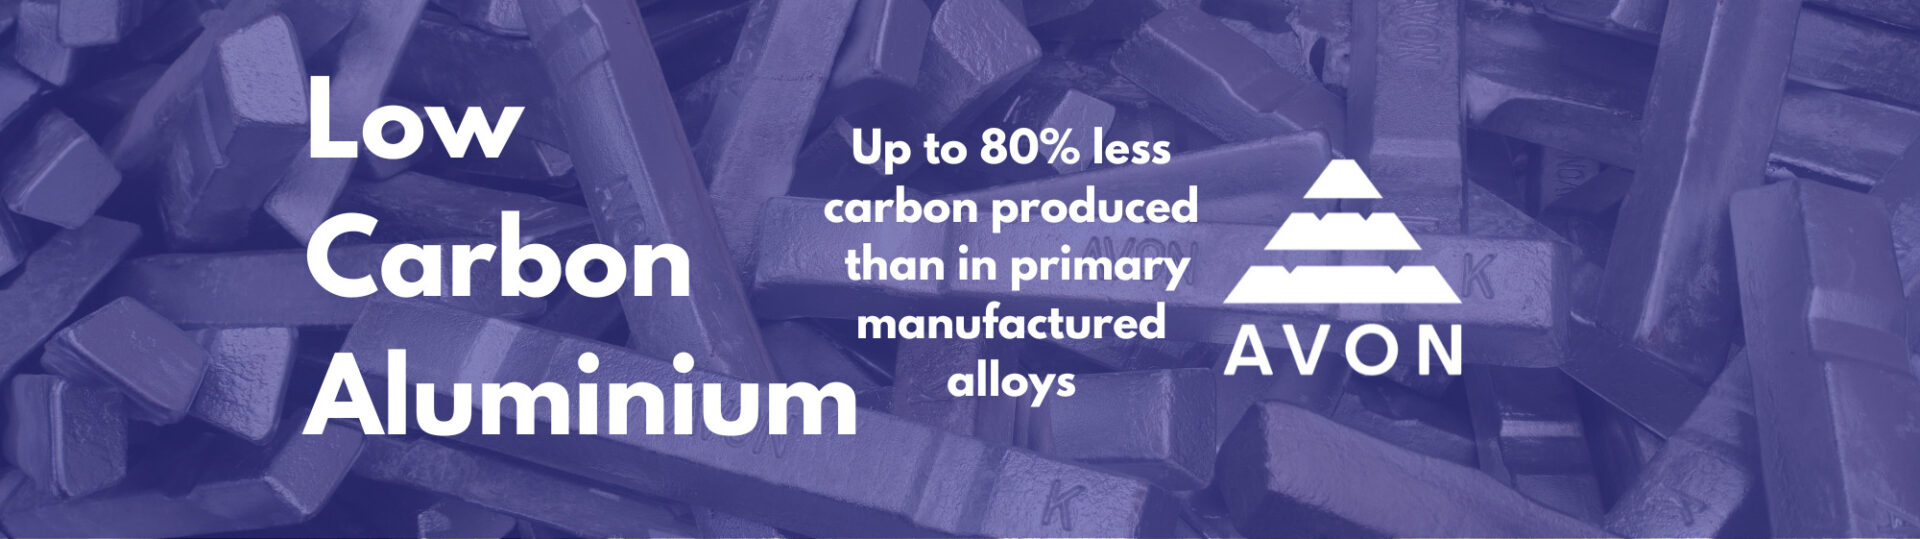 Low Carbon Aluminium (5)